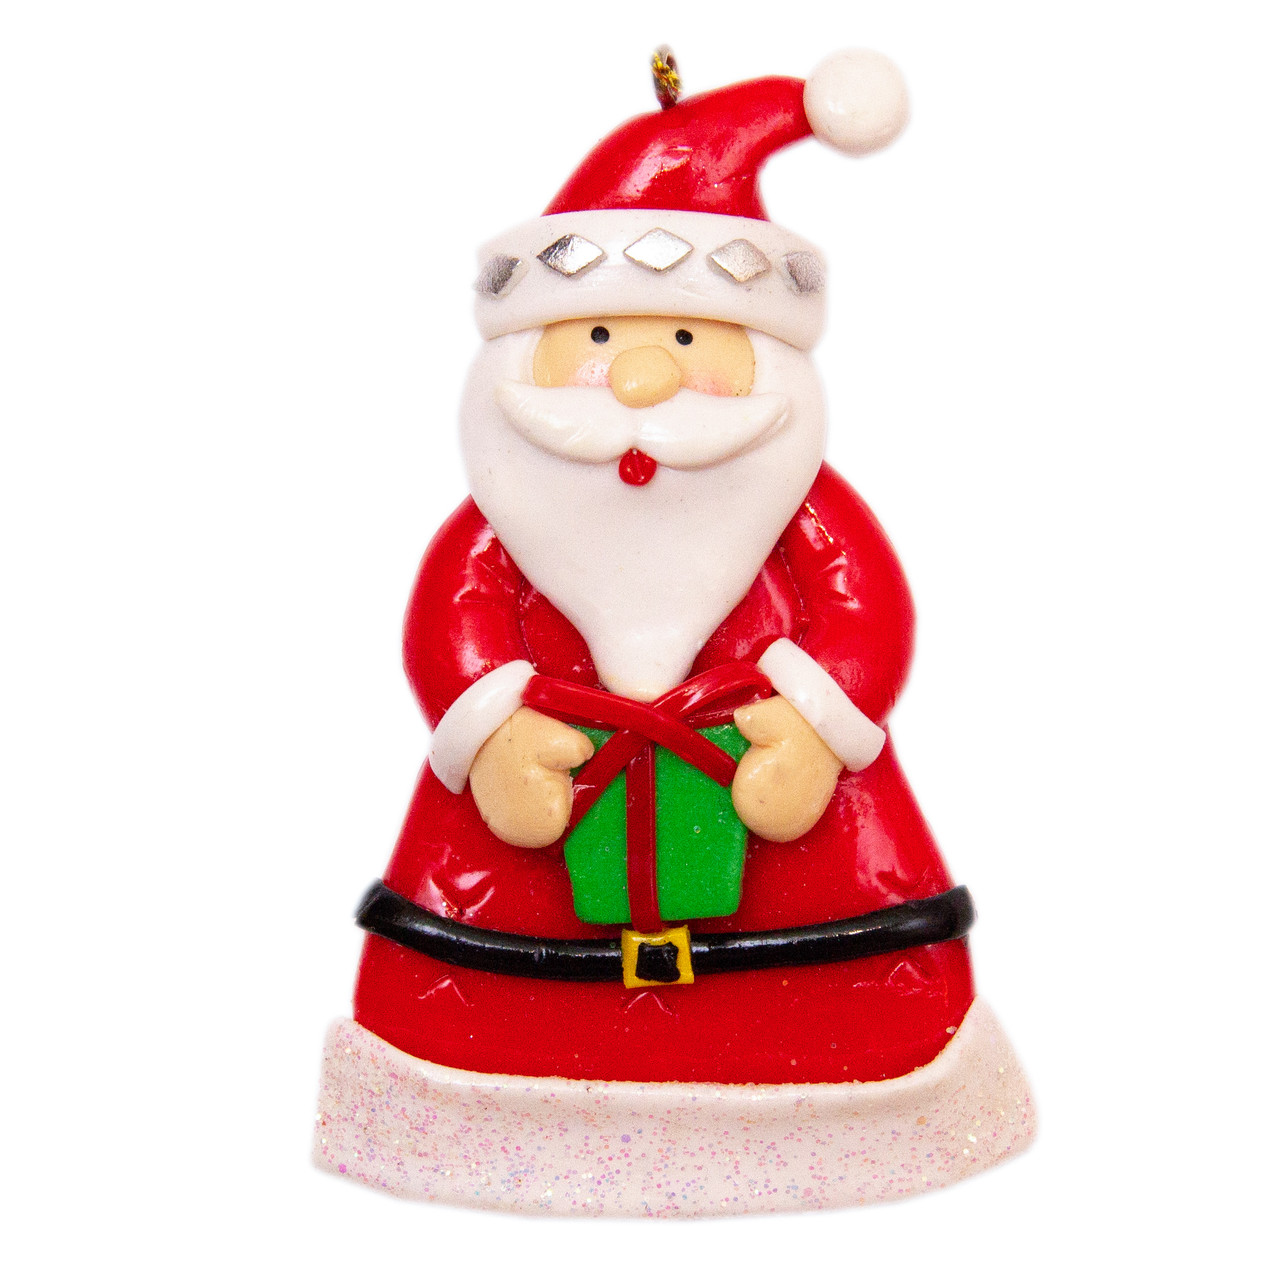 Новорічна ялинкова іграшка - фігурка Дід Мороз з маленьким подарунком, 9 см, червоний, пластик, кераміка (000371-6)